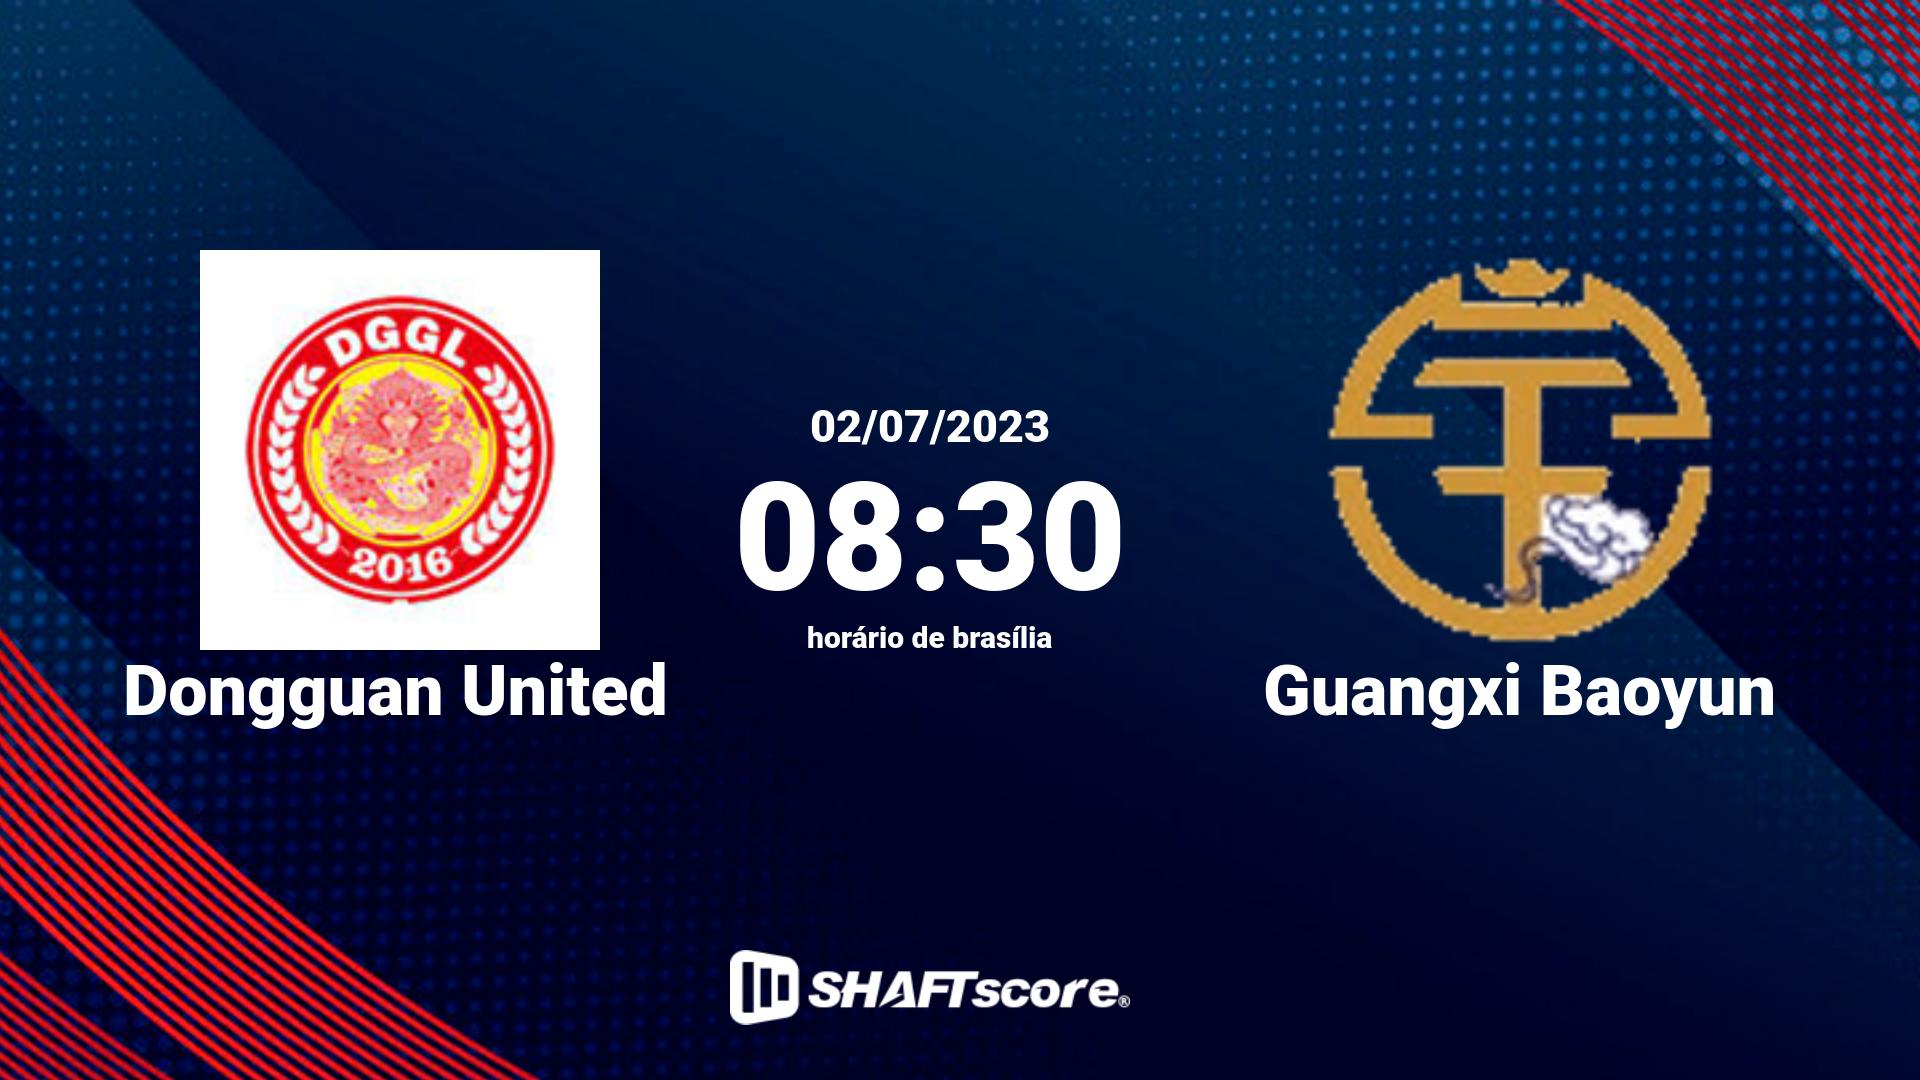 Estatísticas do jogo Dongguan United vs Guangxi Baoyun 02.07 08:30